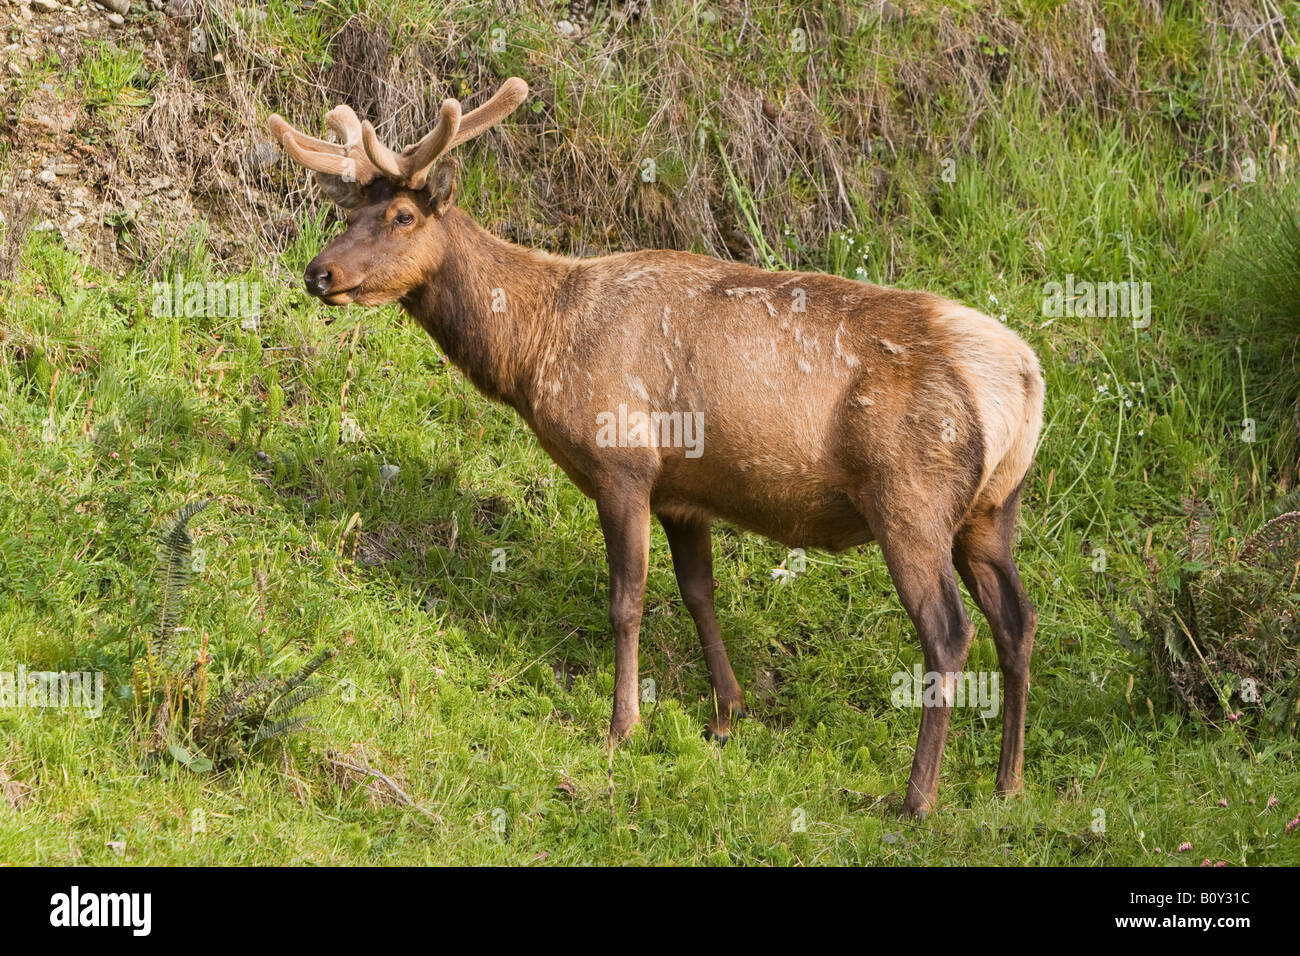 Roosevelt Elk, Cervus canadensis roosevelti Stock Photo